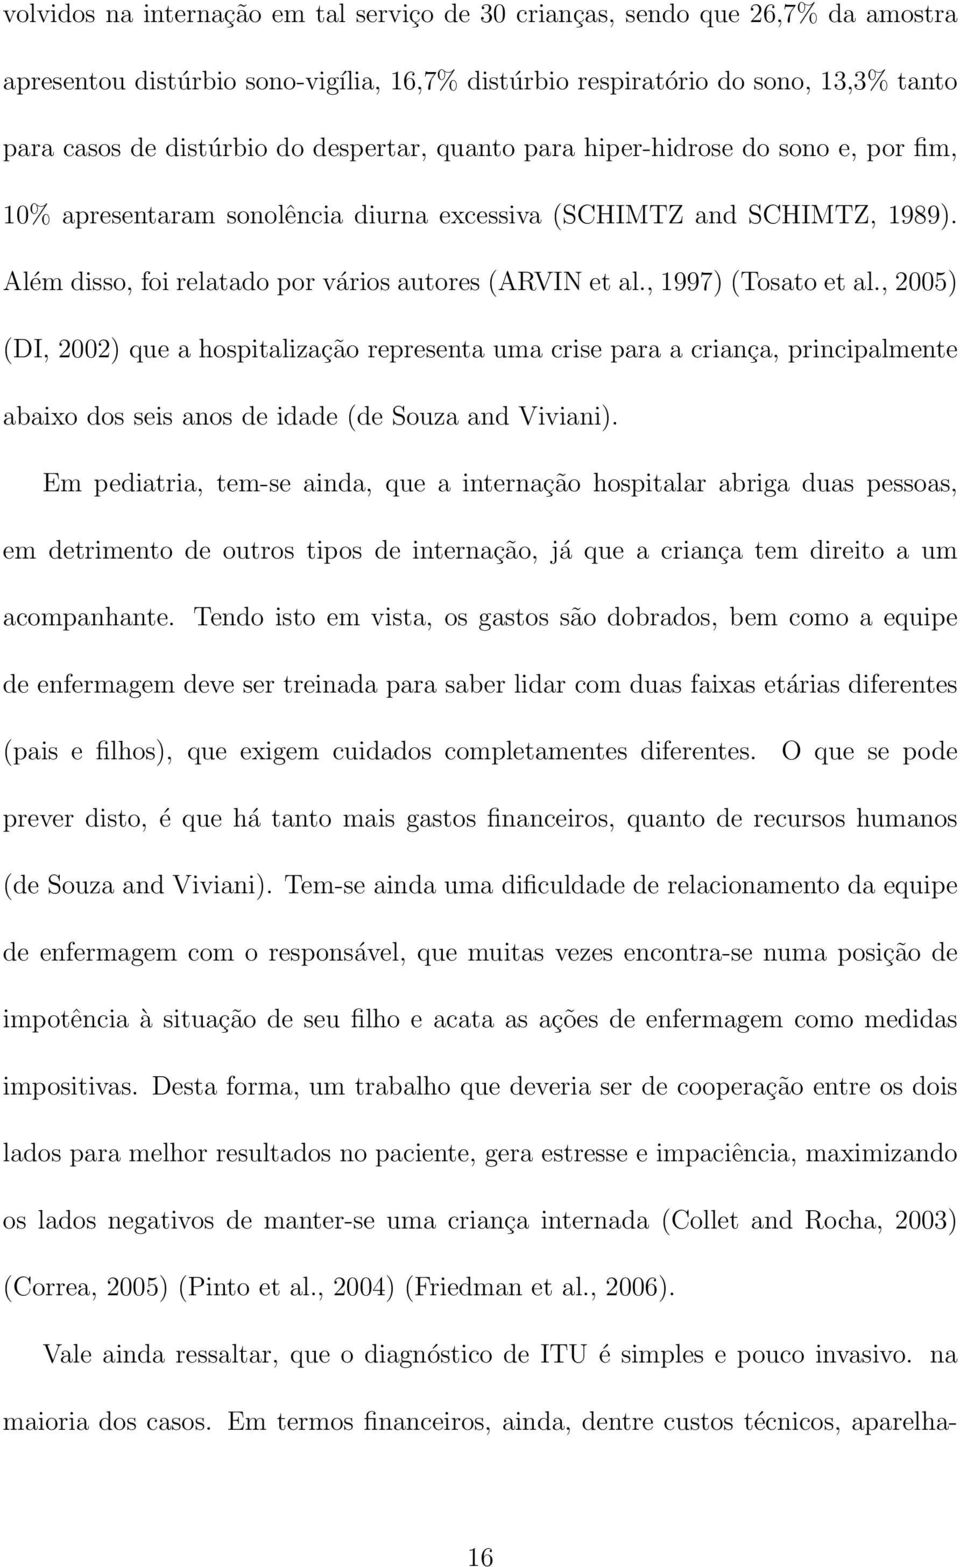 , 1997) (Tosato et al., 2005) (DI, 2002) que a hospitalização representa uma crise para a criança, principalmente abaixo dos seis anos de idade (de Souza and Viviani).